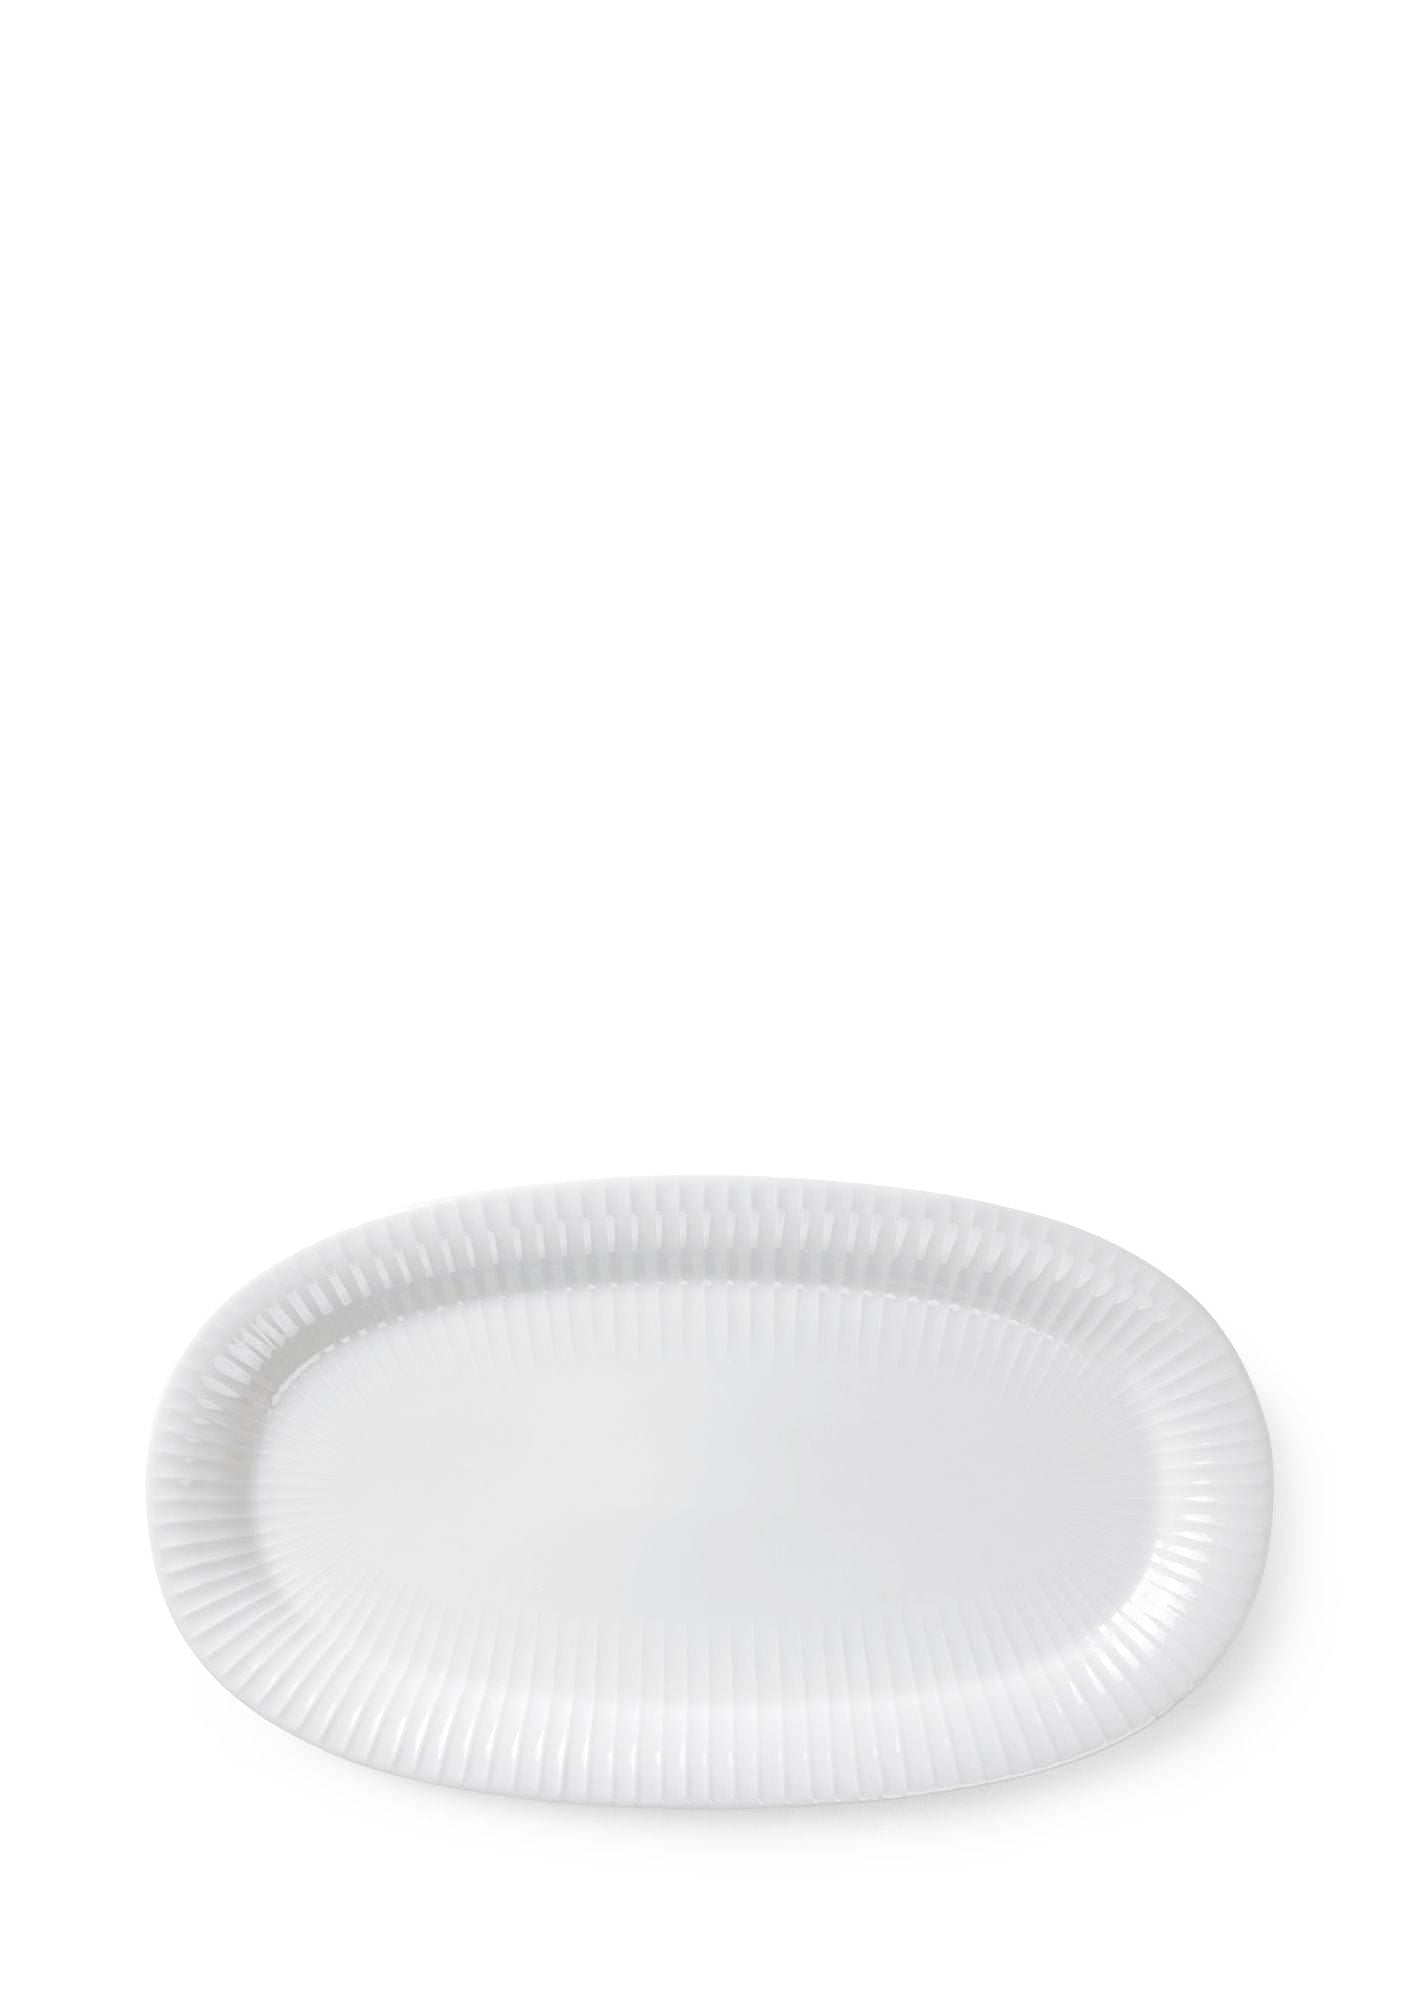 Kähler Hammershøi Oval Portion Platte 40x22,5 cm, weiß